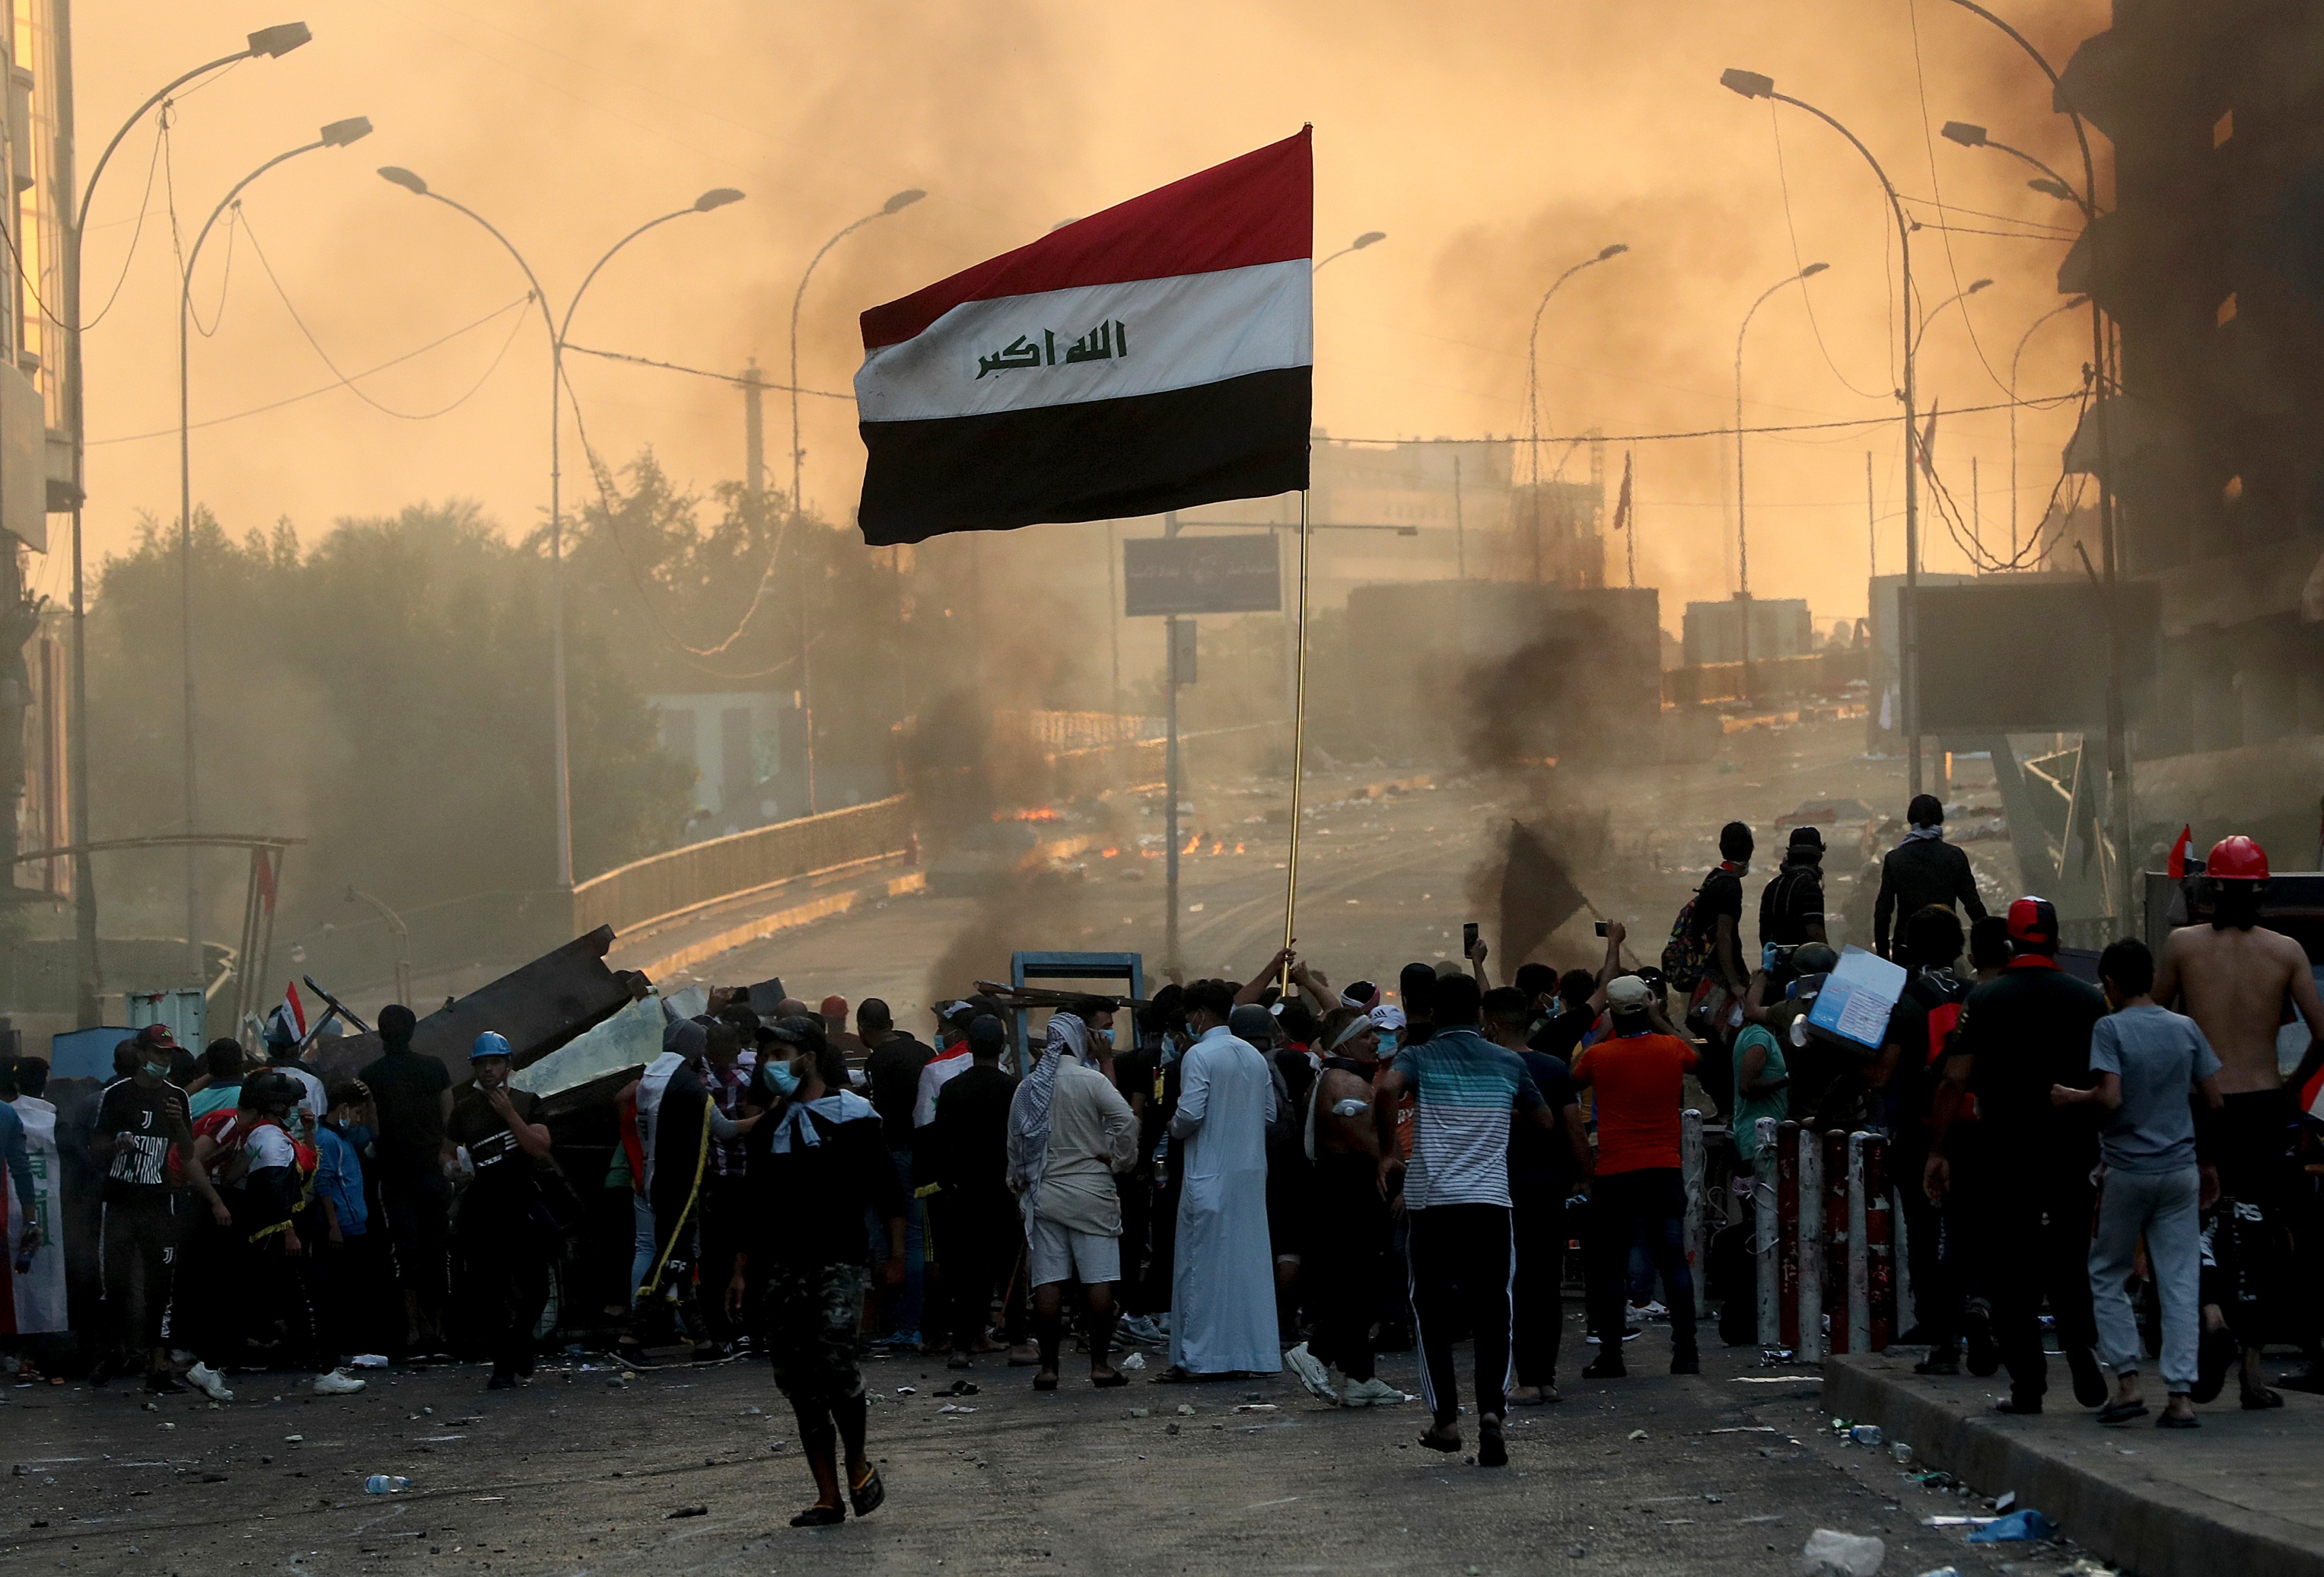 شعله ور کردن هسته‌های خاموش داعش برای فشار بر حشد الشعبی /در عراق چه خبر است؟ + تصاویر و نقشه میدانی